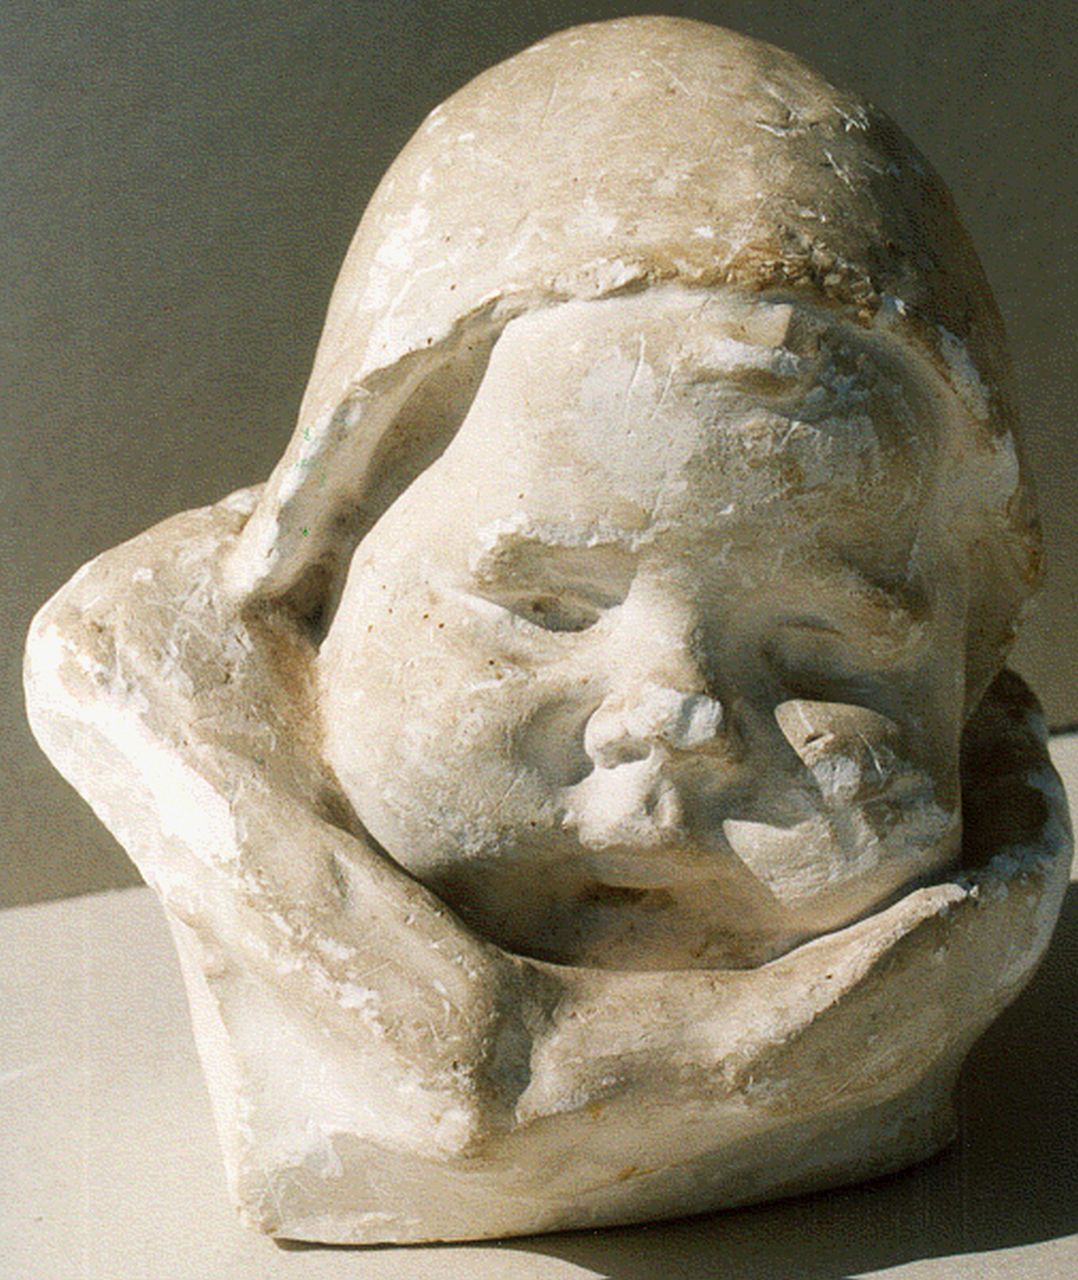 Wijk C.H.M. van | 'Charles' Henri Marie van Wijk, Babyköpfchen mit Mütze, Gips 15,0 cm, Unterzeichnet nicht